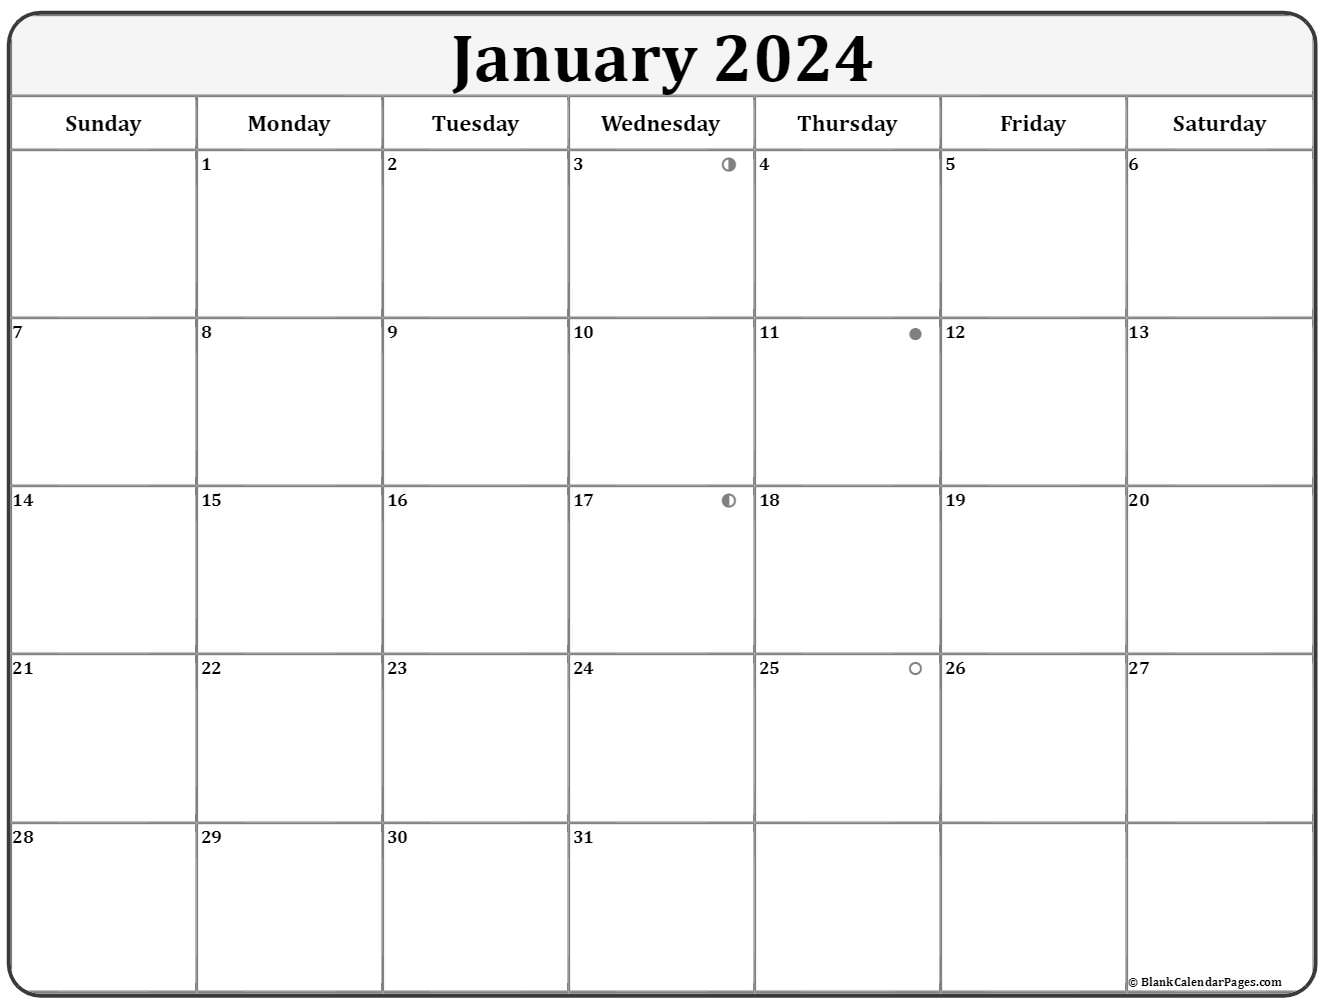 January 2024 Lunar Calendar | Moon Phase Calendar